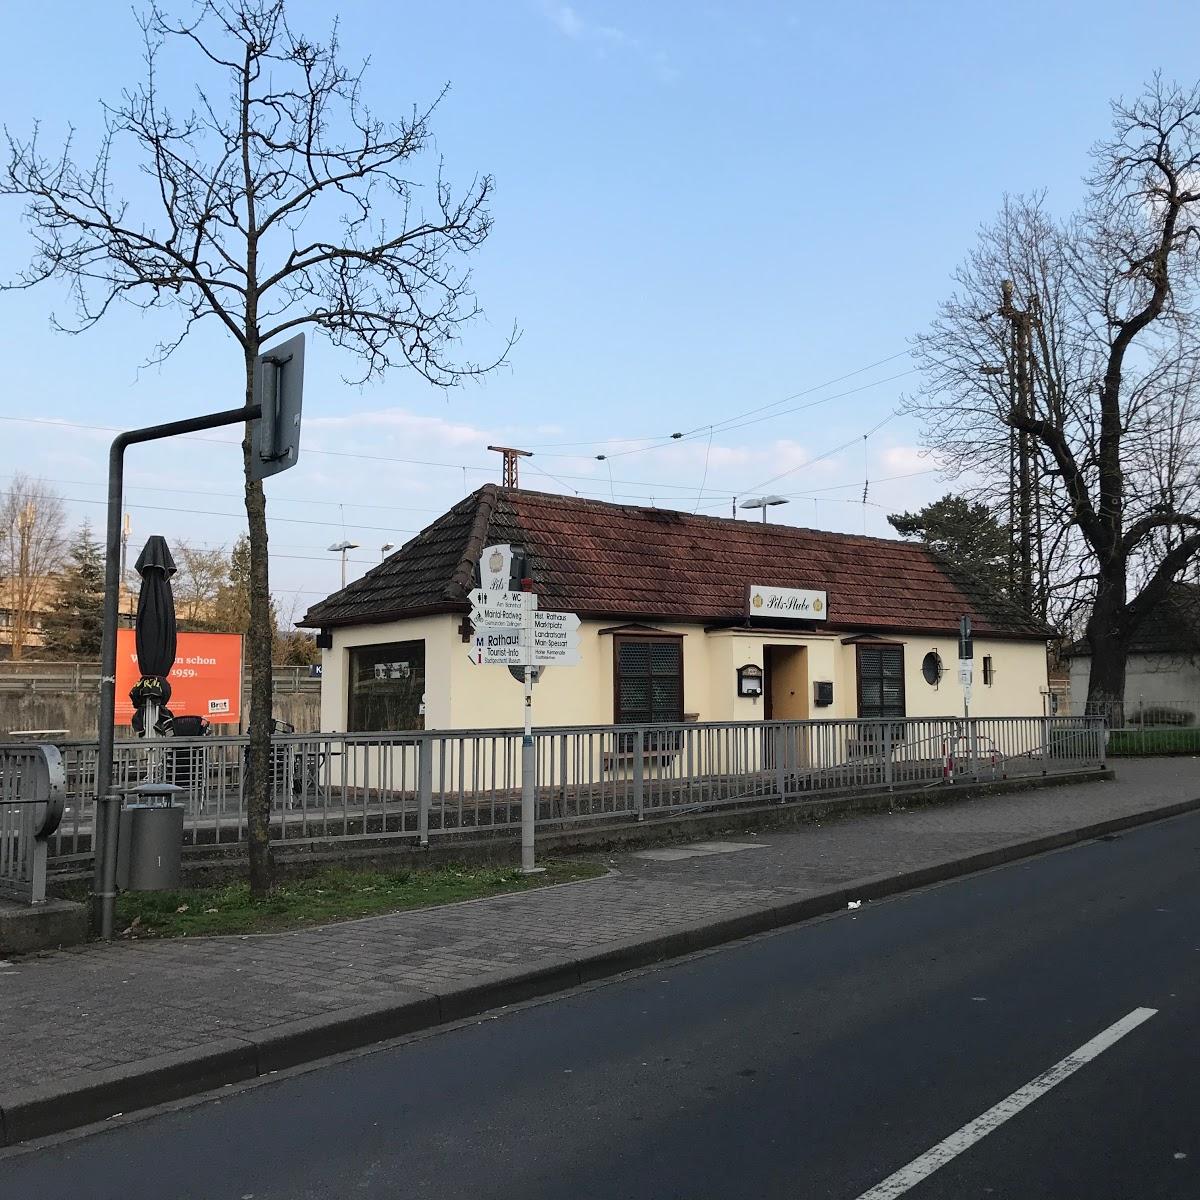 Restaurant "Pils-Stube" in Karlstadt